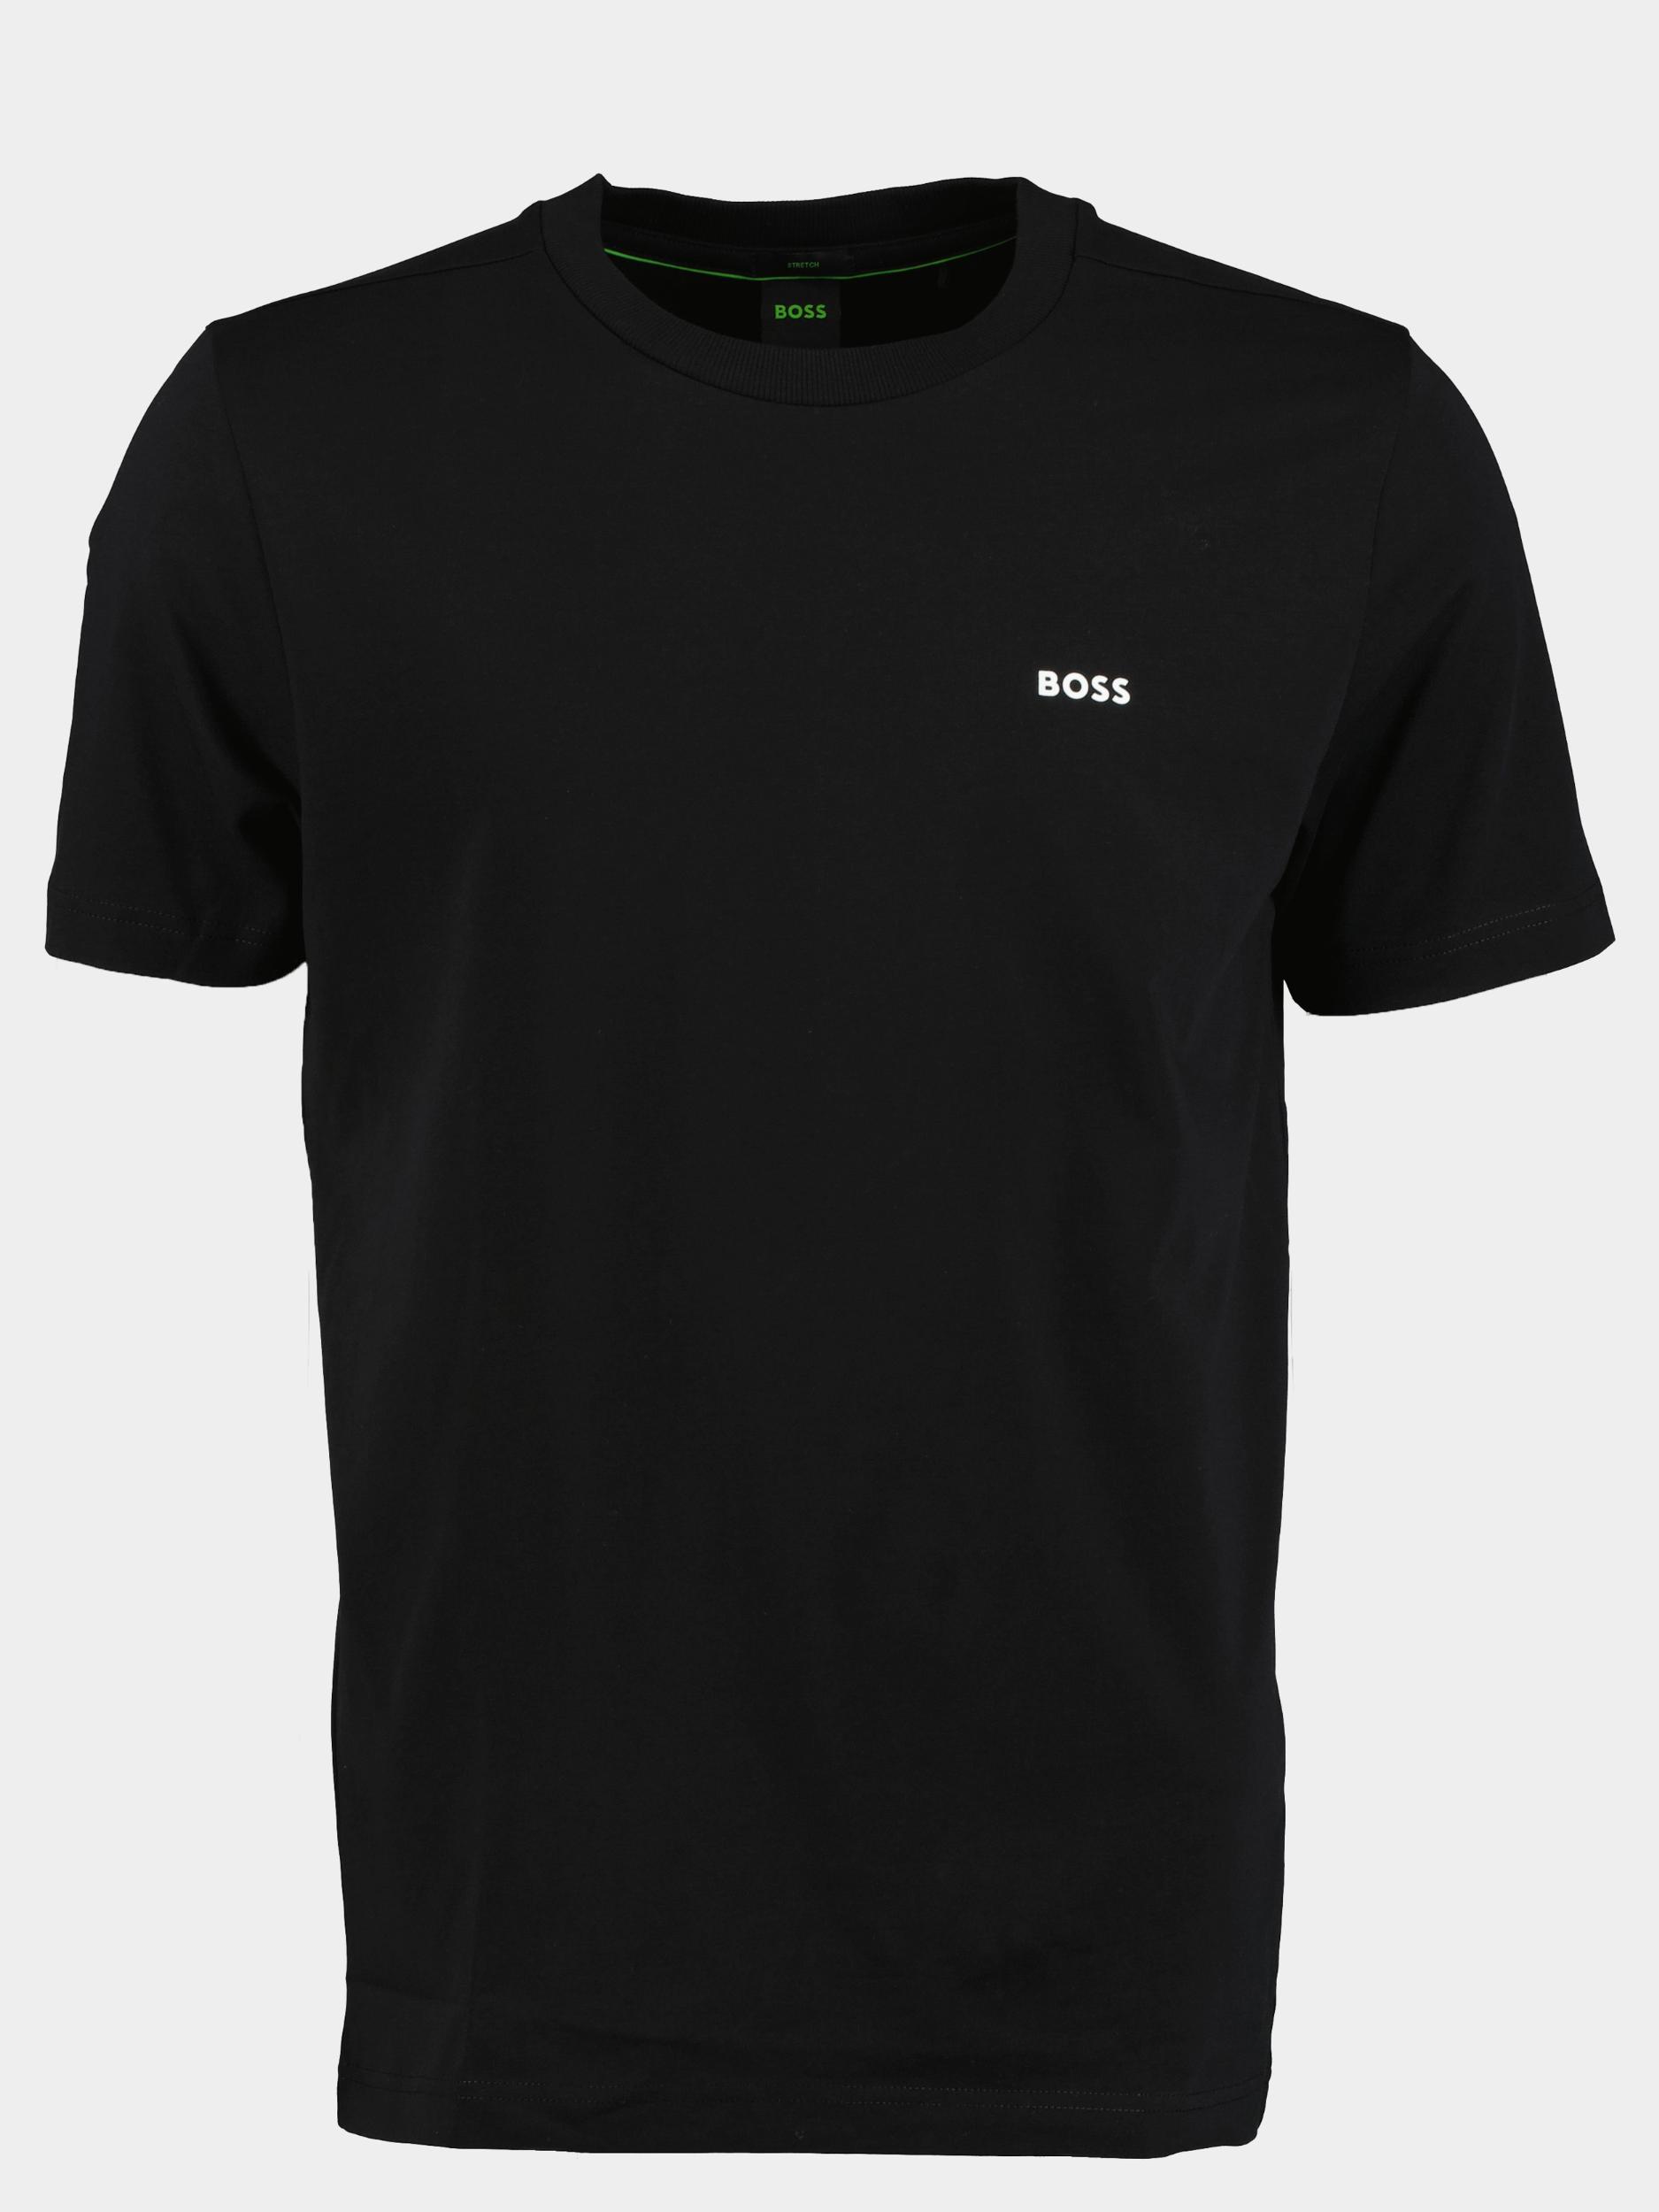 BOSS Green T-shirt korte mouw Zwart Tee 10110340 01 50469057/001